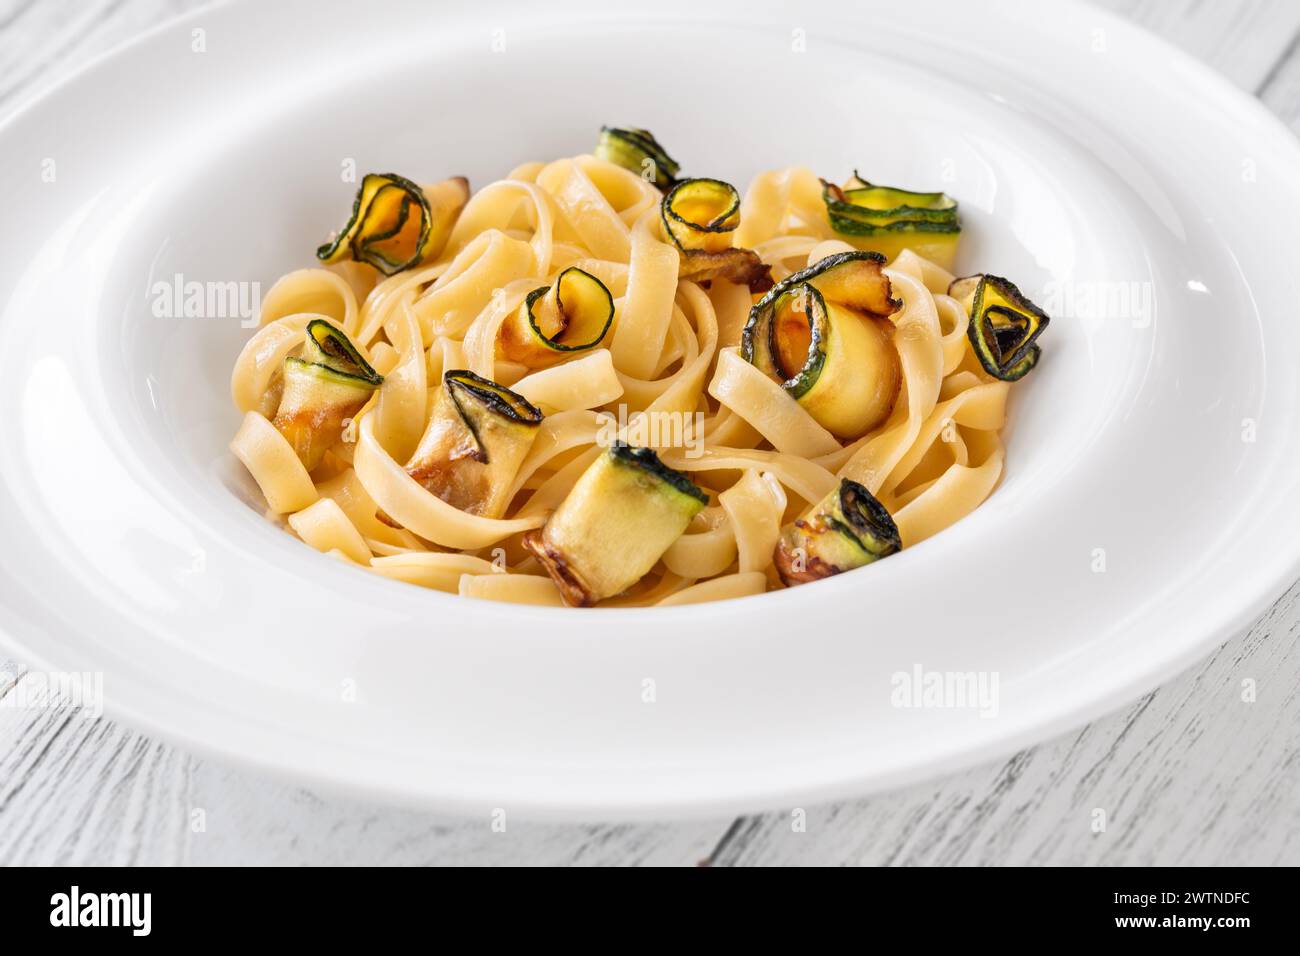 Portion of zucchini parmesan tagliatelle pasta in plate Stock Photo